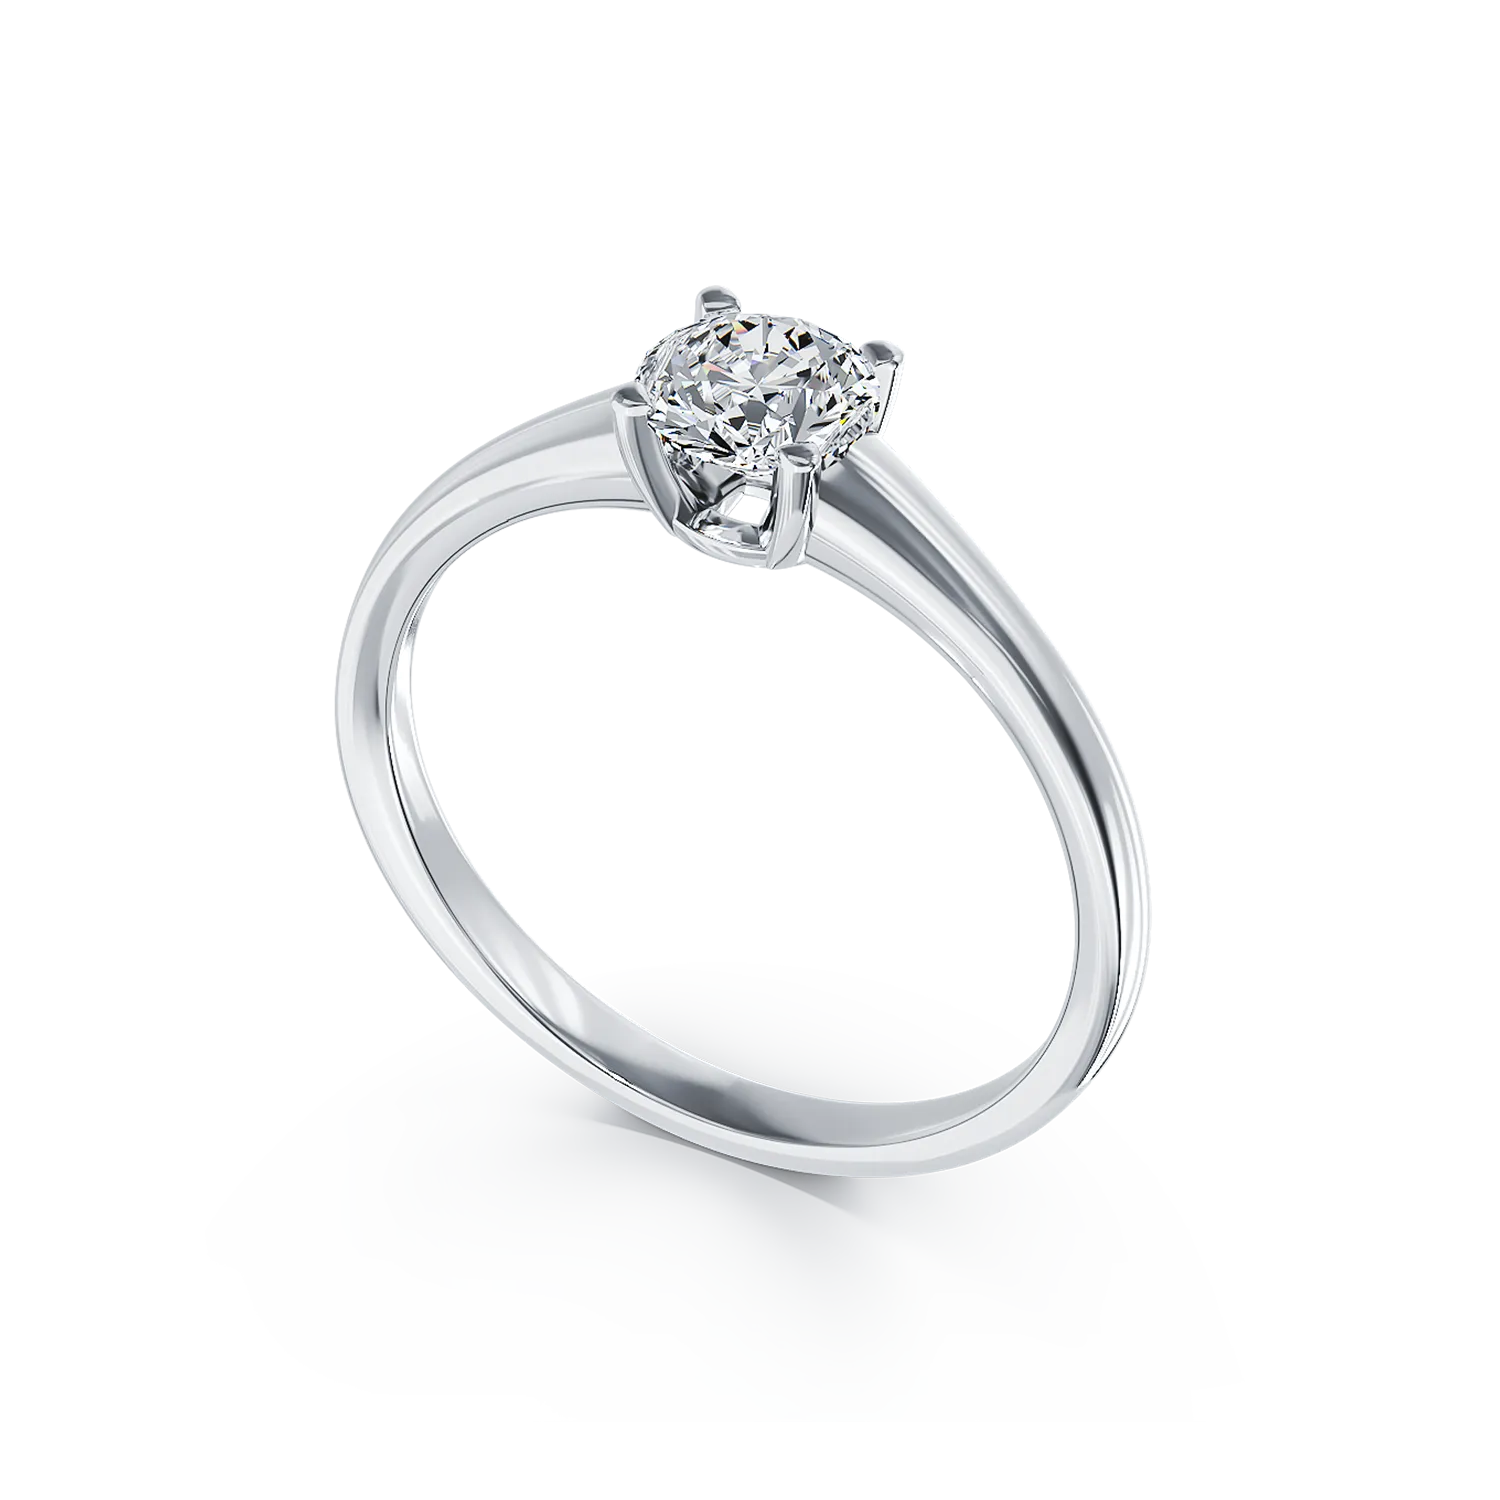 Eljegyzési gyűrű 18K-os fehér aranyból egy 0,5ct solitaire gyémánttal